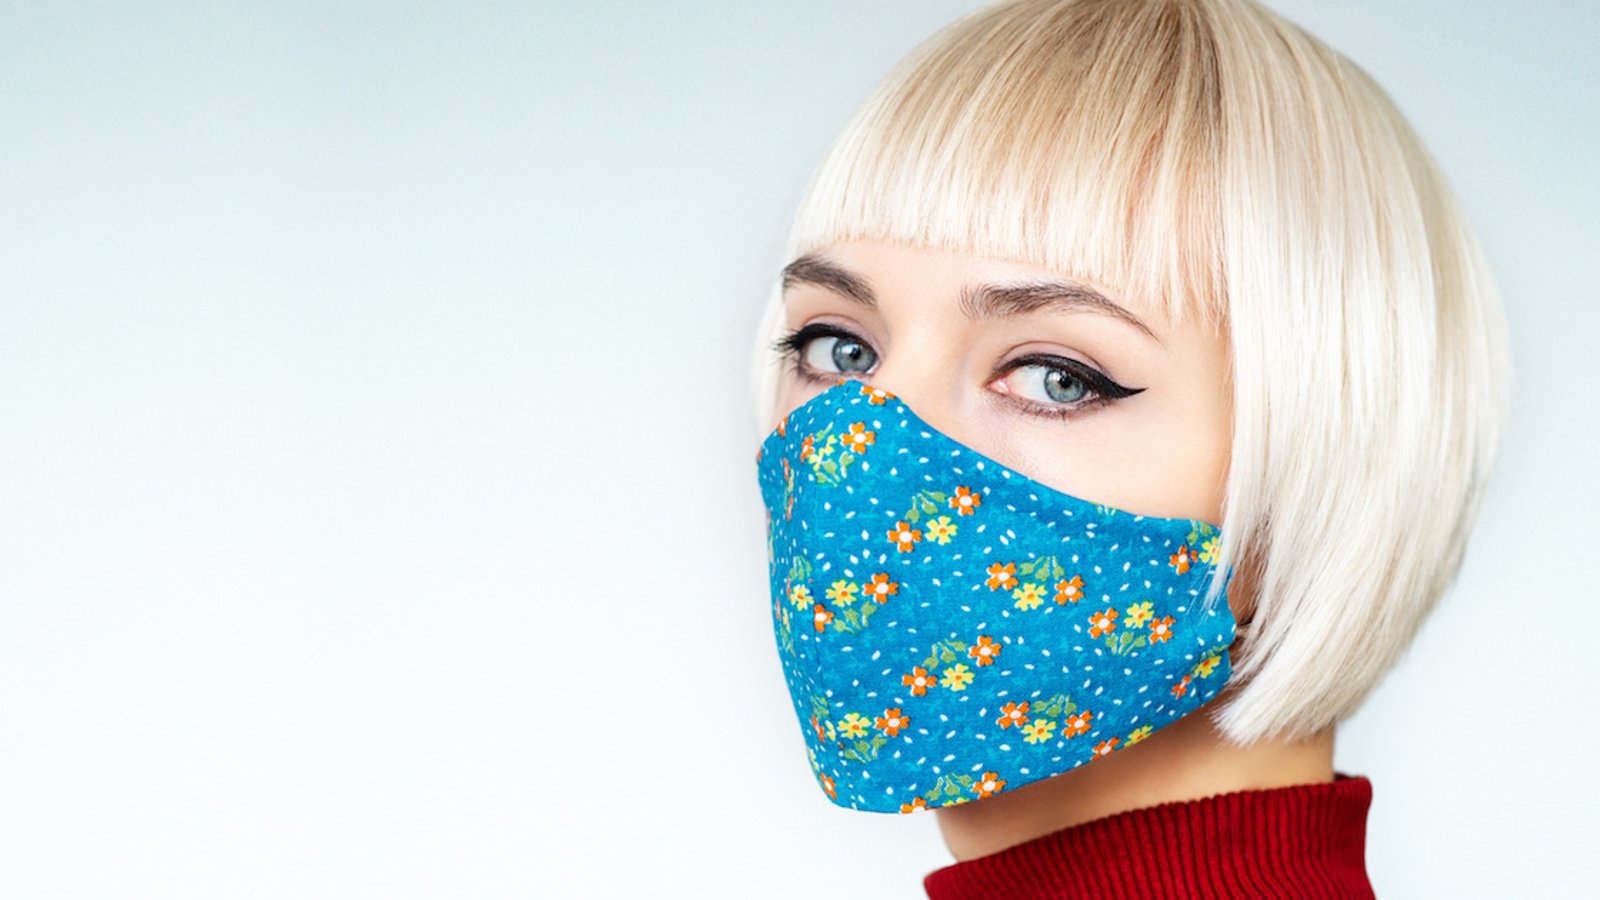 Pandémie du coronavirus: les 3 erreurs que les gens commettent le plus avec leurs masques